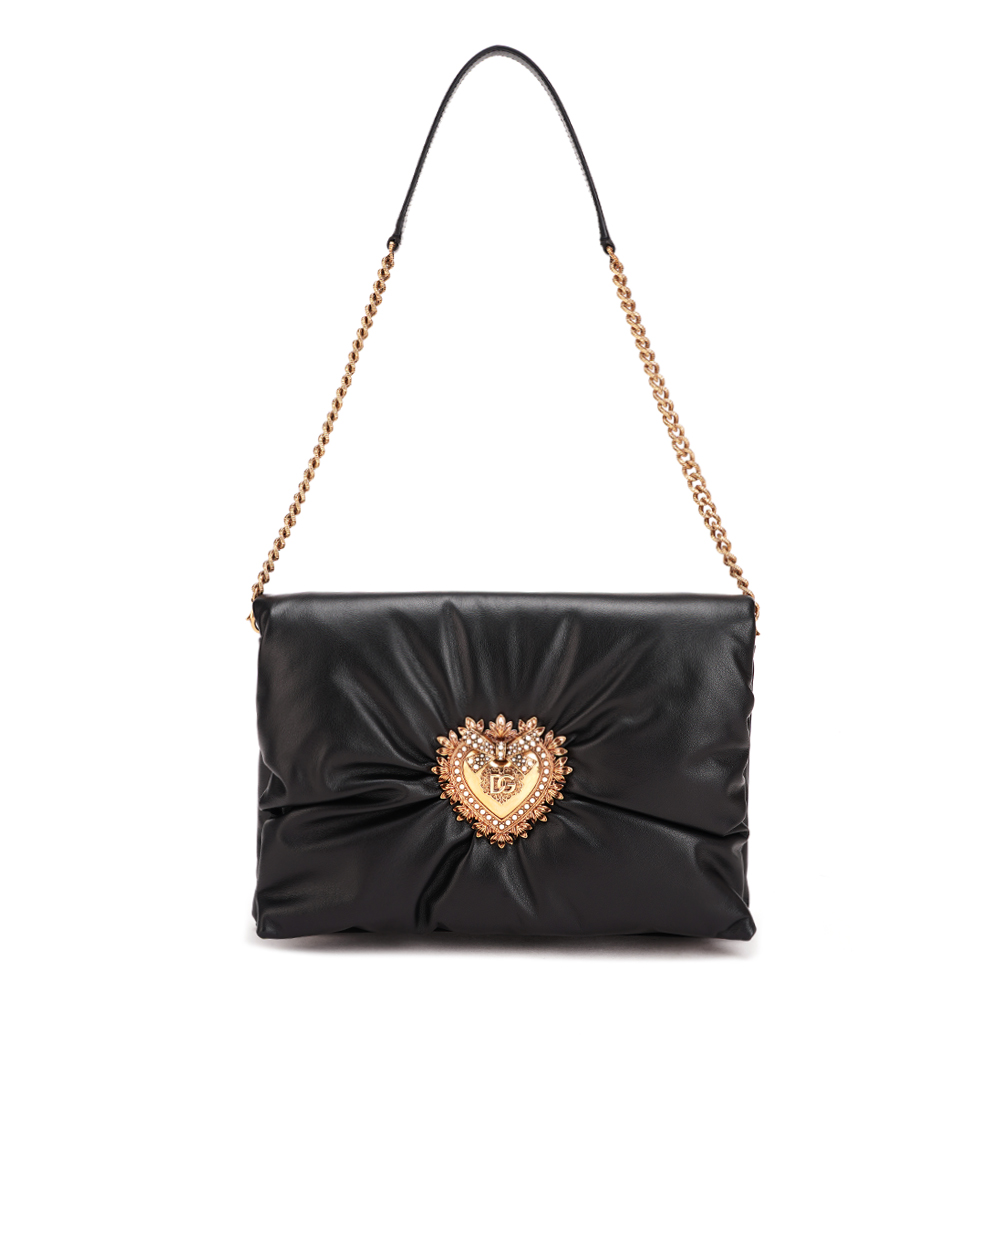 Кожаная сумка Devotion Soft Medium Dolce&Gabbana BB7349-AK274, черный цвет • Купить в интернет-магазине Kameron